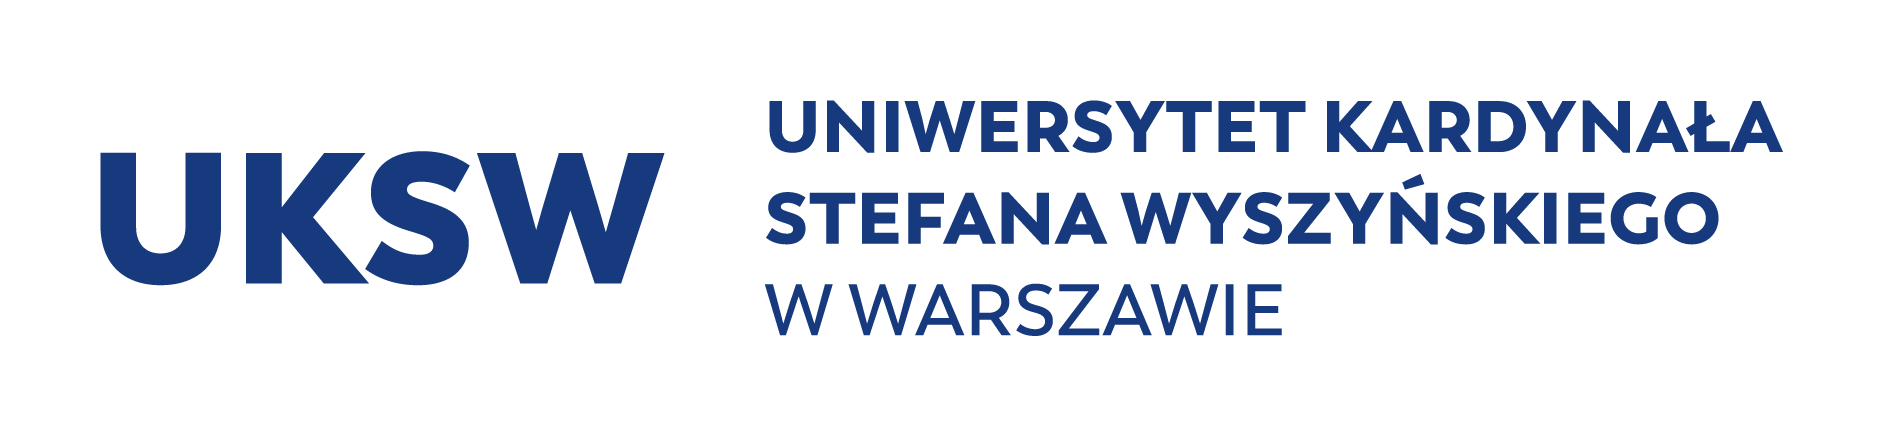 Cardinal Stefan Wyszyński University in Warsaw, logo